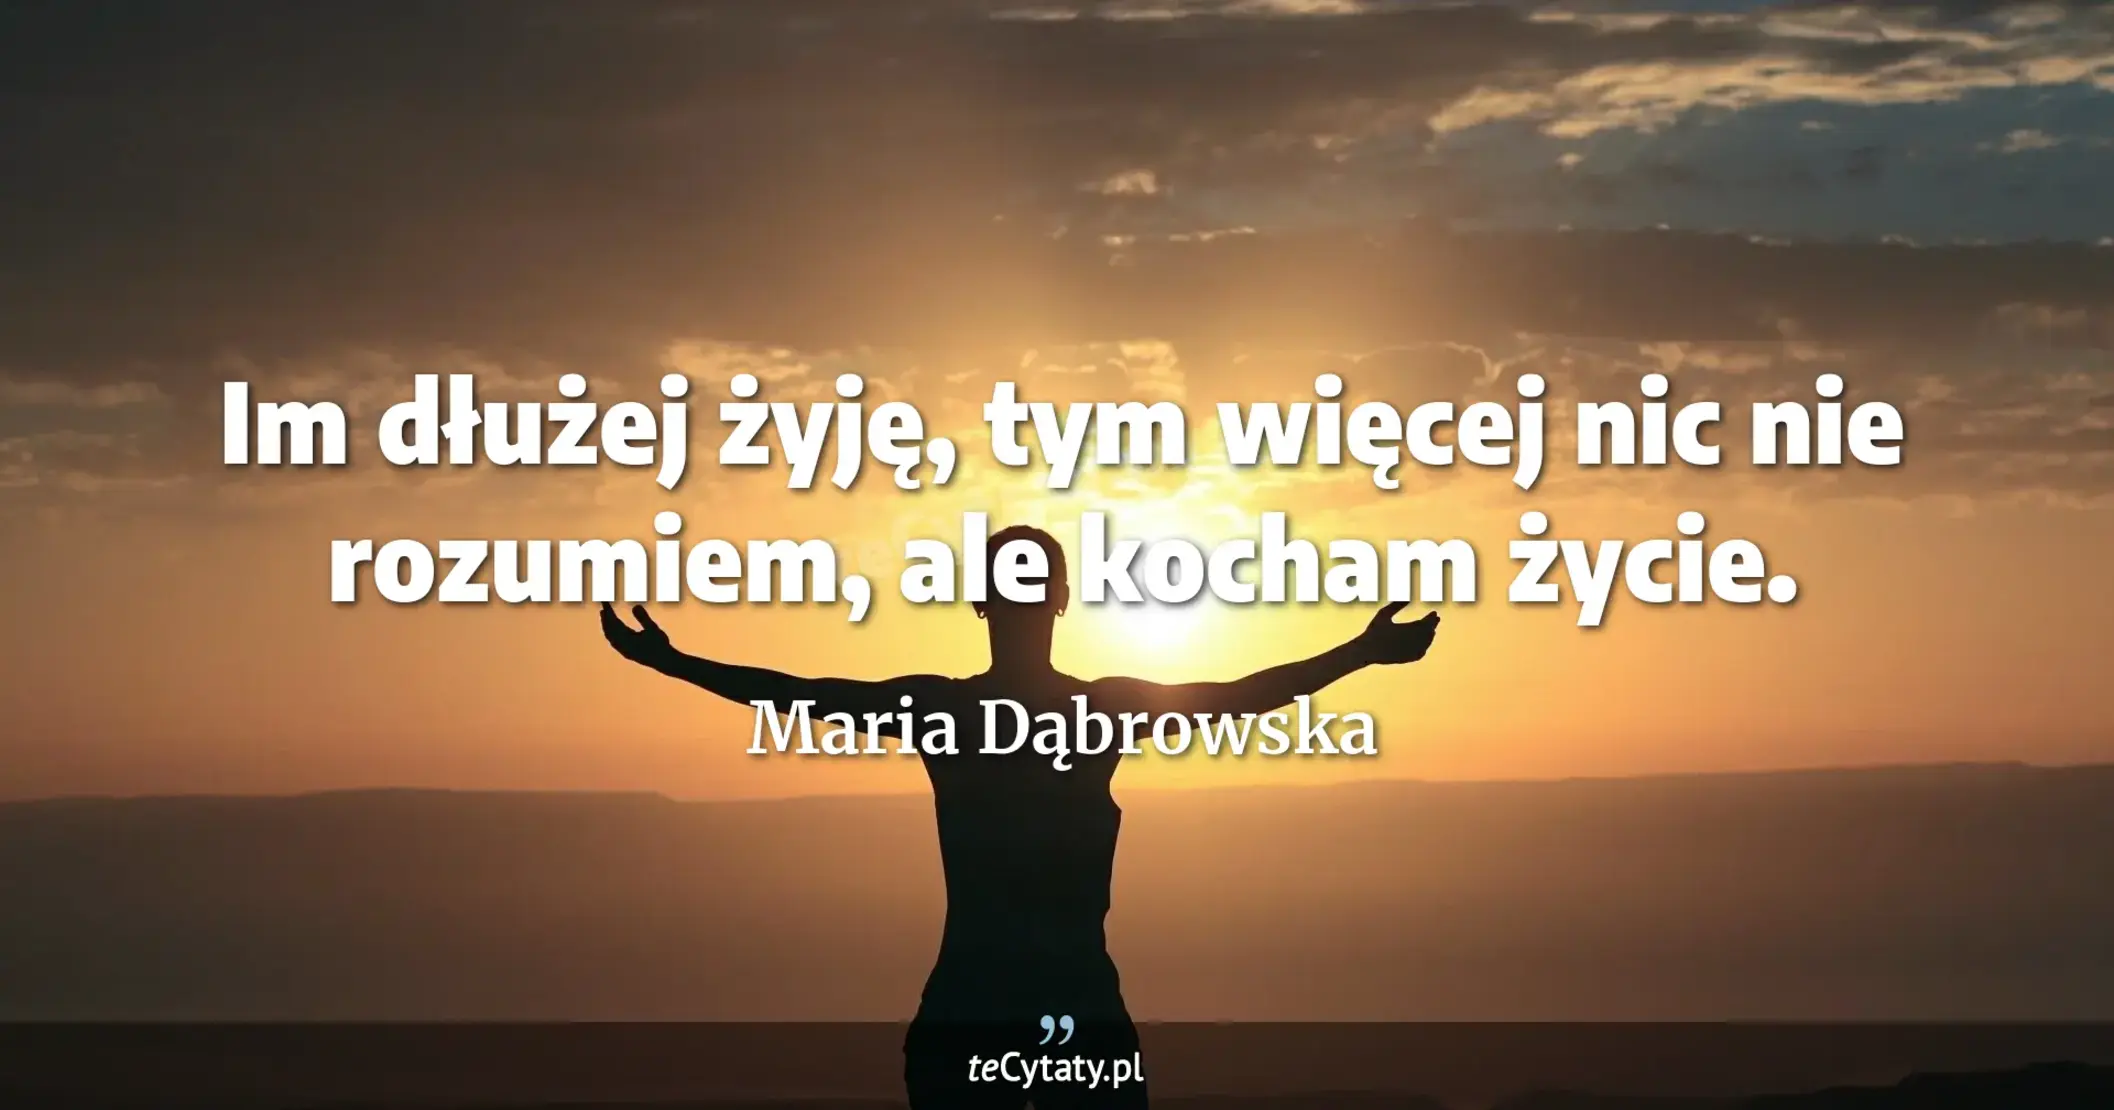 Im dłużej żyję, tym więcej nic nie rozumiem, ale kocham życie. - Maria Dąbrowska